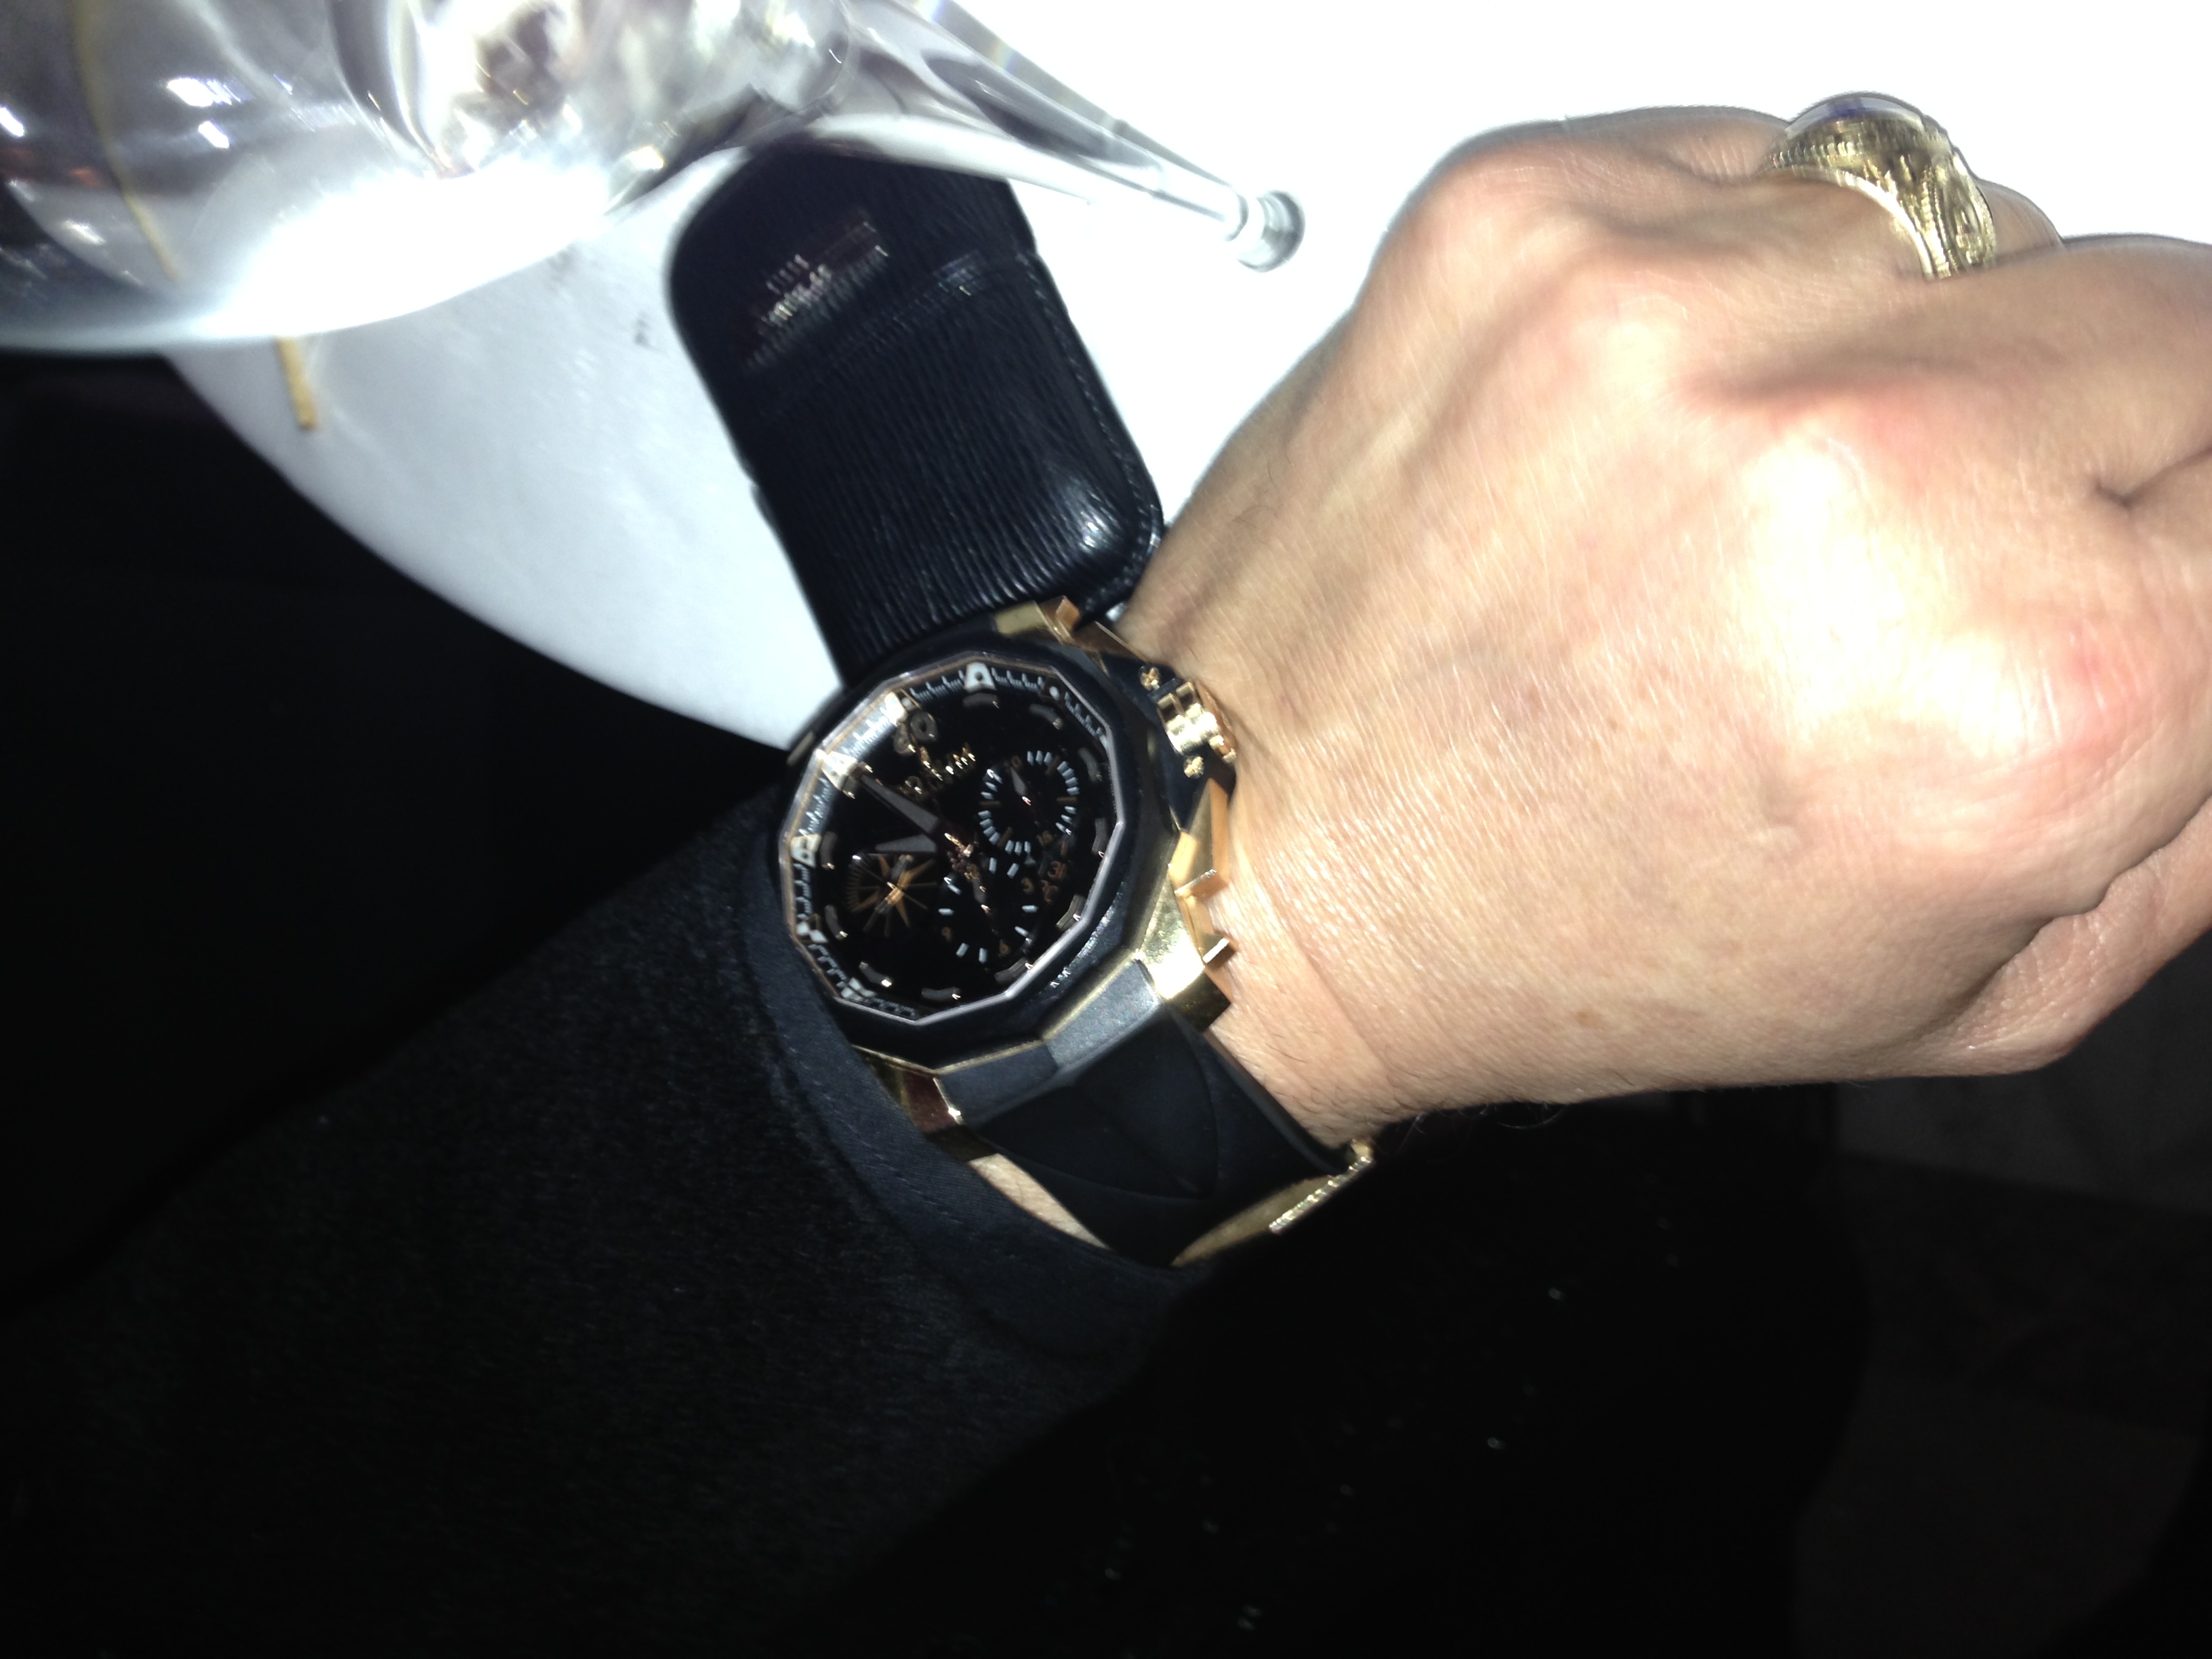 Pe incheietura stranga, designerul ascundea un ceas Corum de 50.000 de euro